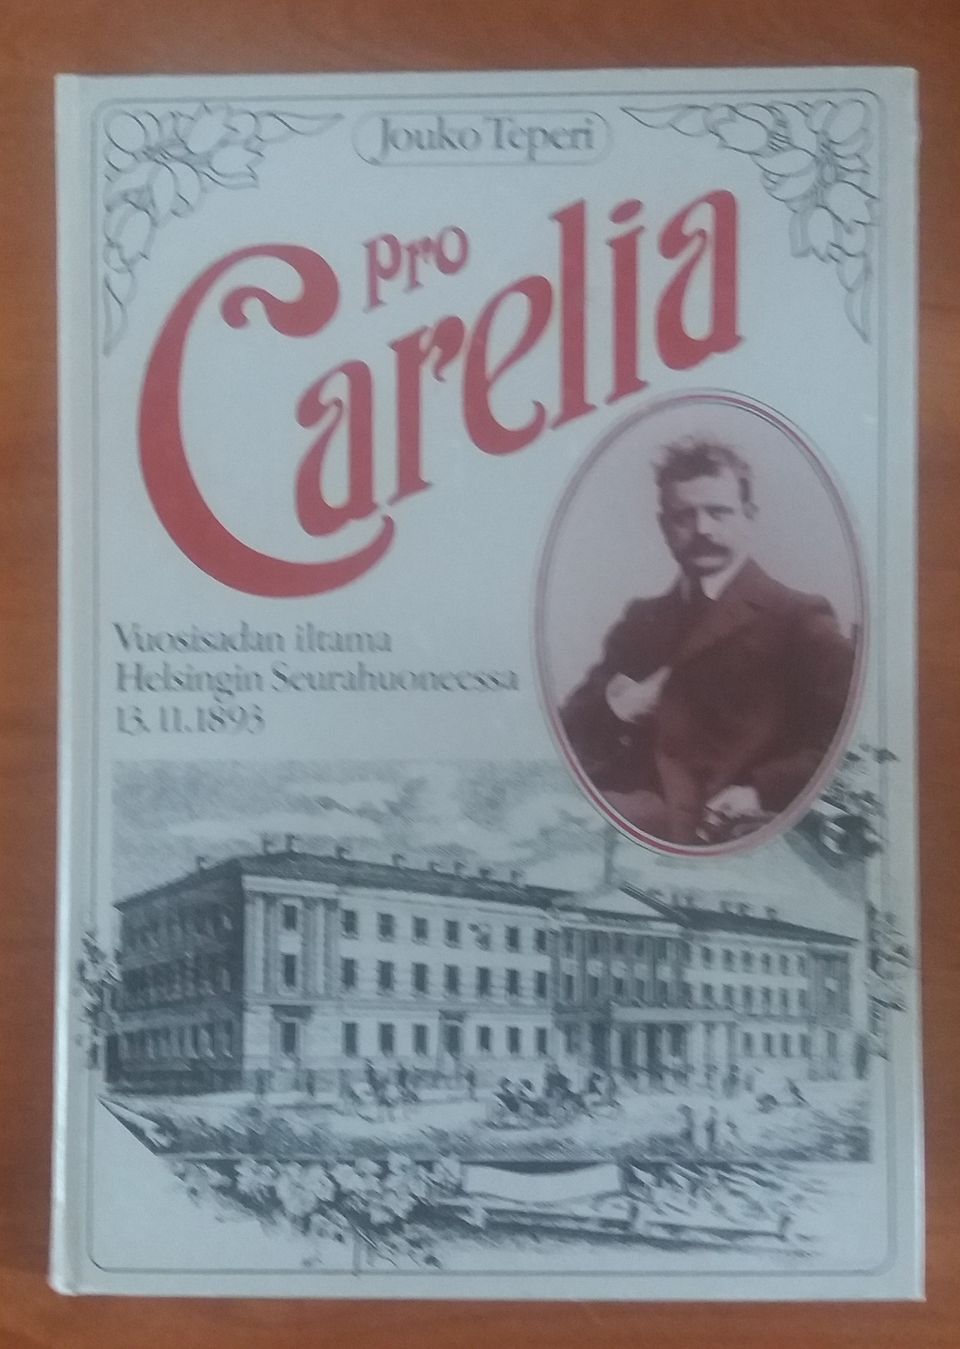 Teperi Jouko PRO CARELIA - Vuosisadan iltama Seurahuoneessa 13.11.1893